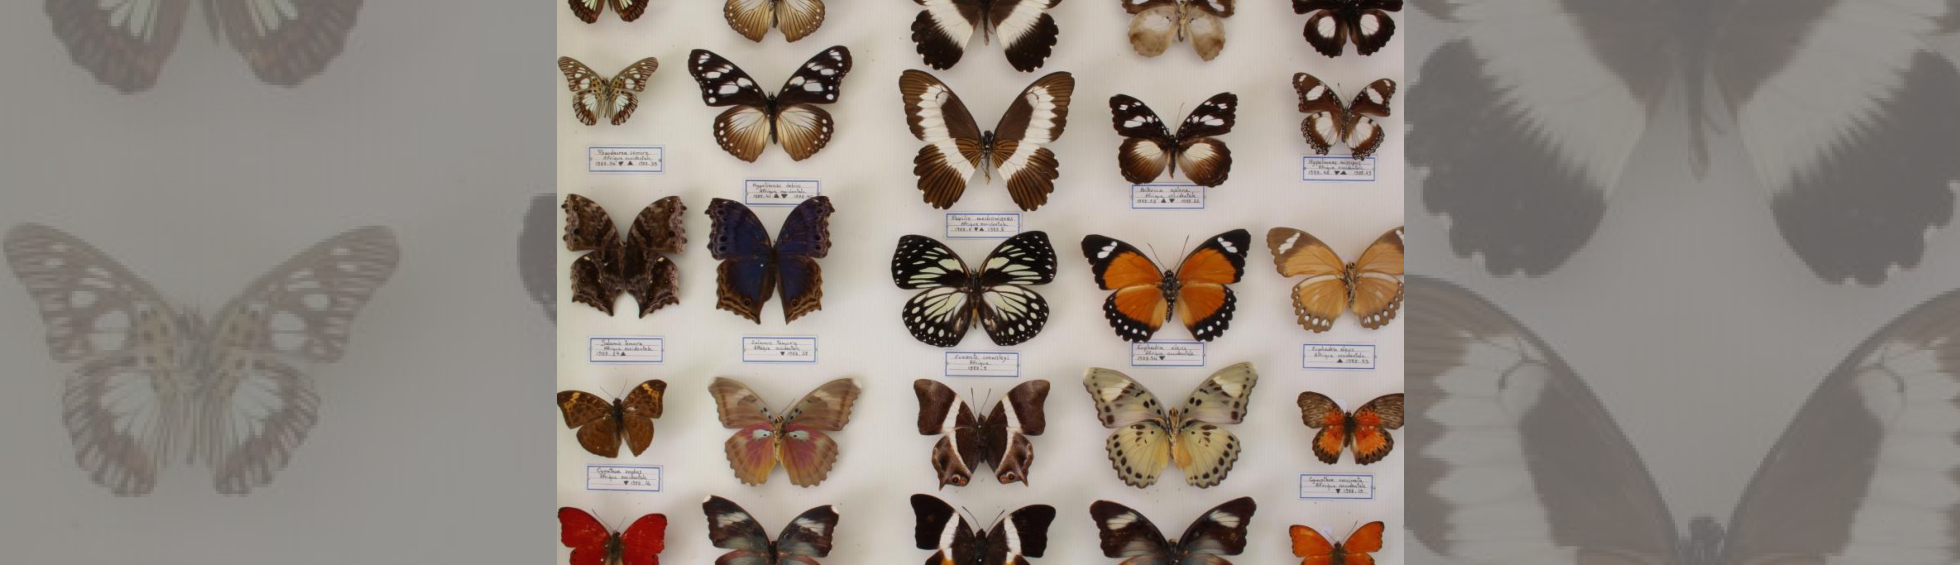 Boite d'exposition de papillons d'Afrique du museum d'histoire naturelle: papillons multicolores épinglés